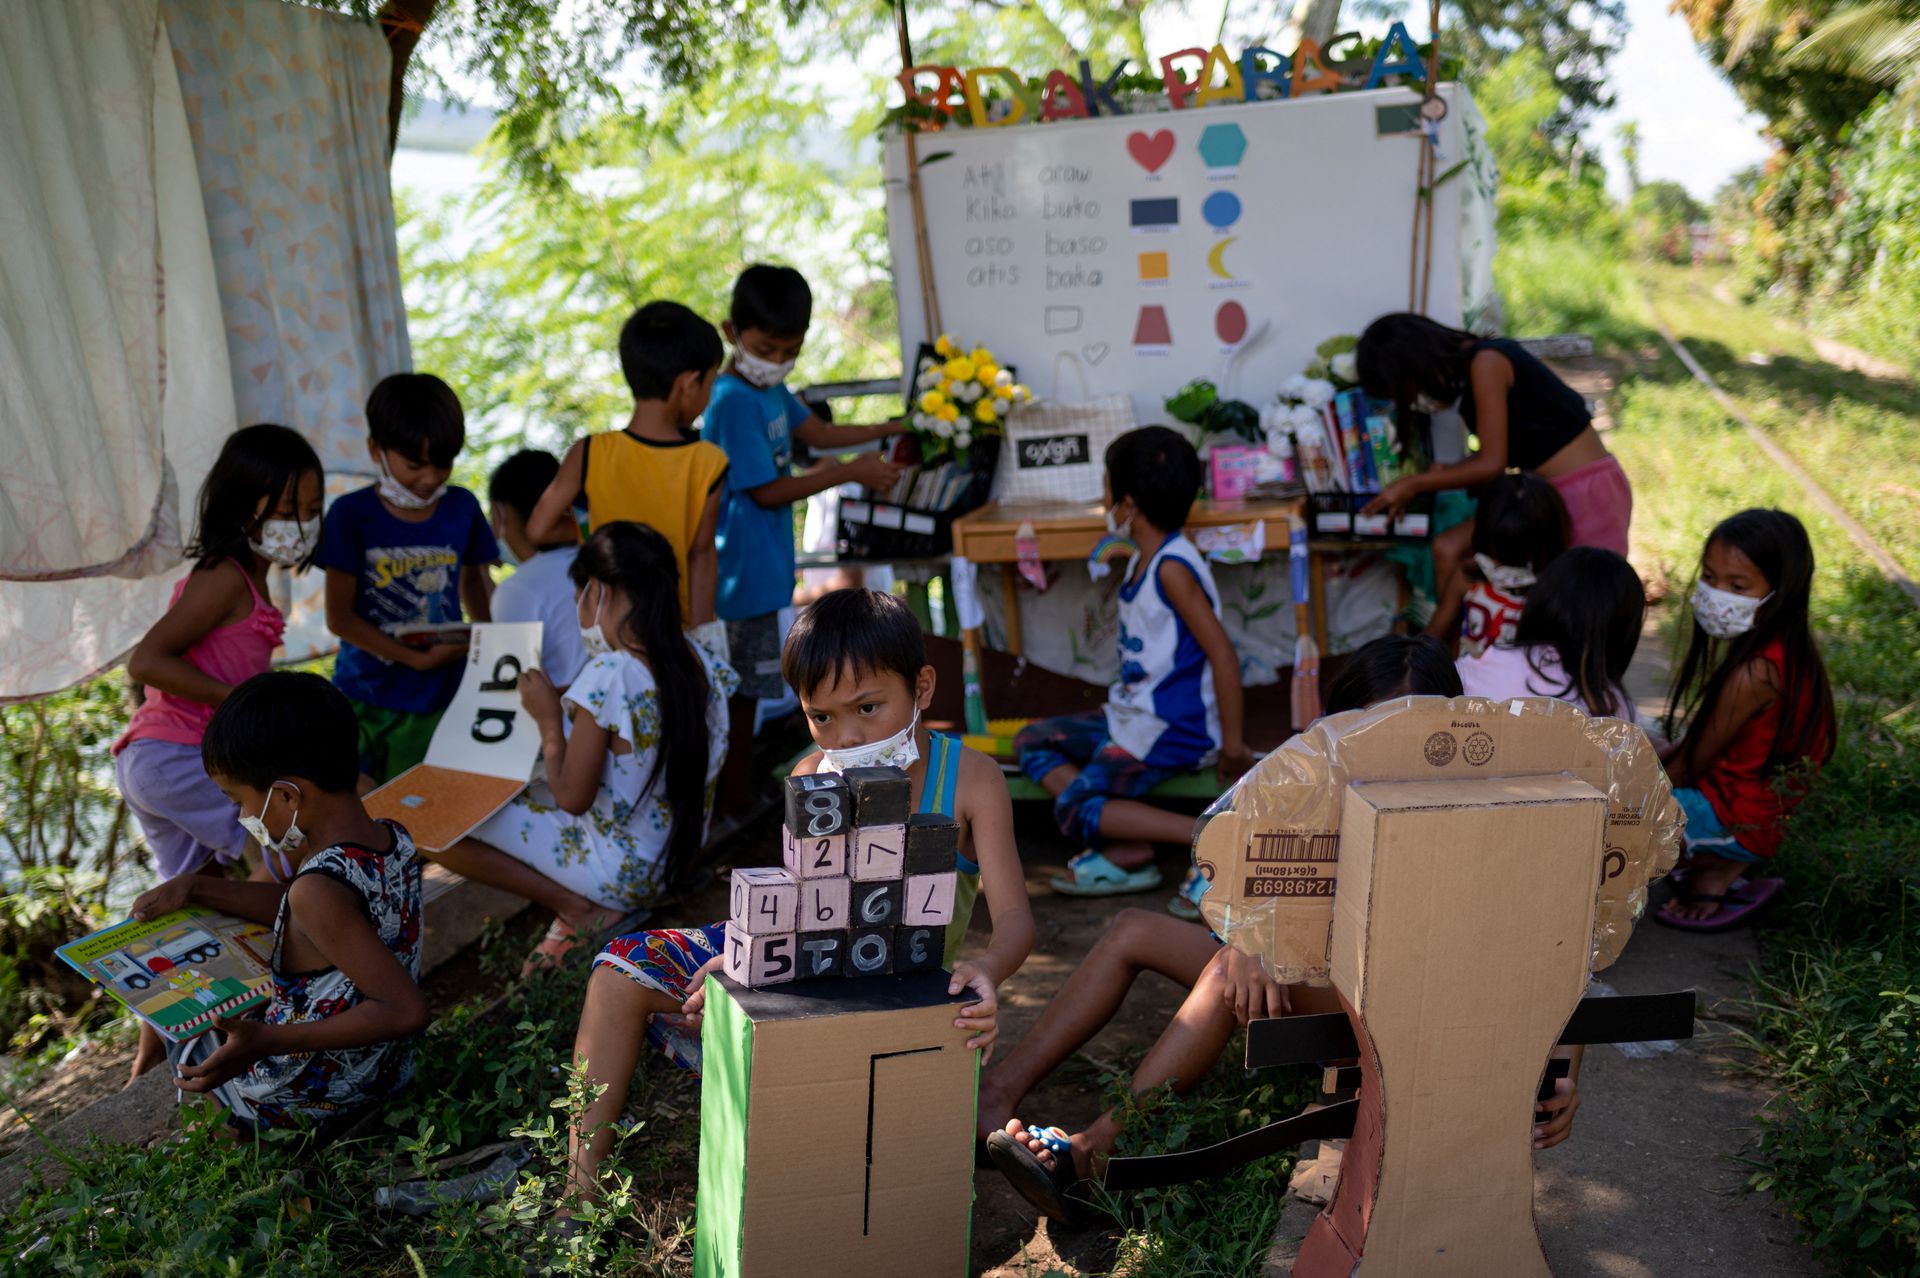 Các em học và tập đọc bằng những dụng cụ, sách vở chiếc xe đẩy chở tới (Ảnh: Reuters)